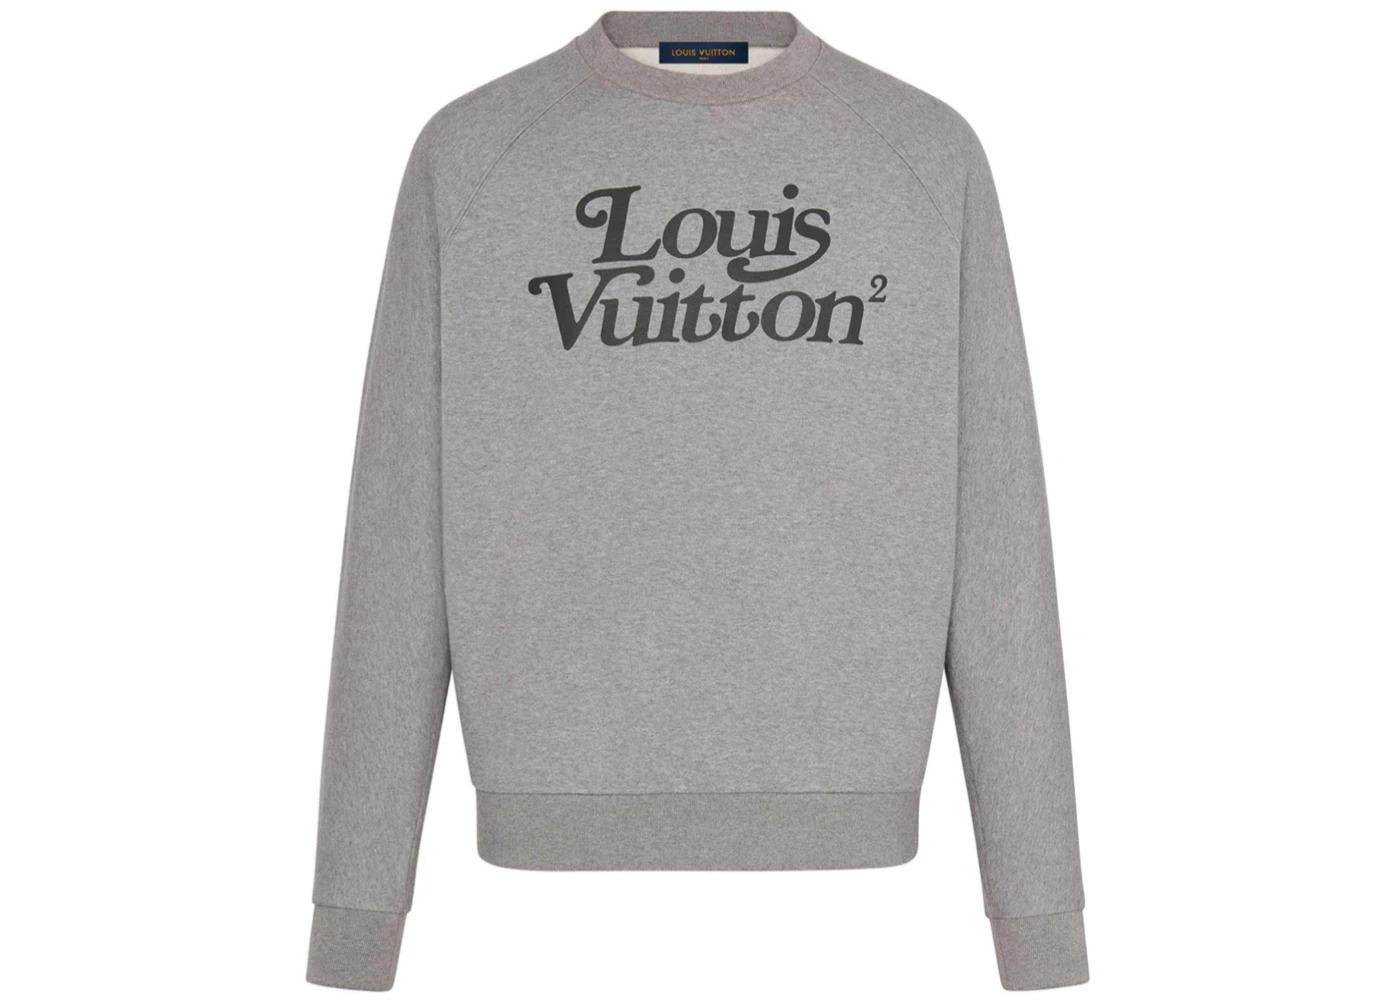 Sweatshirt Louis Vuitton Anthracite size XXXL International in